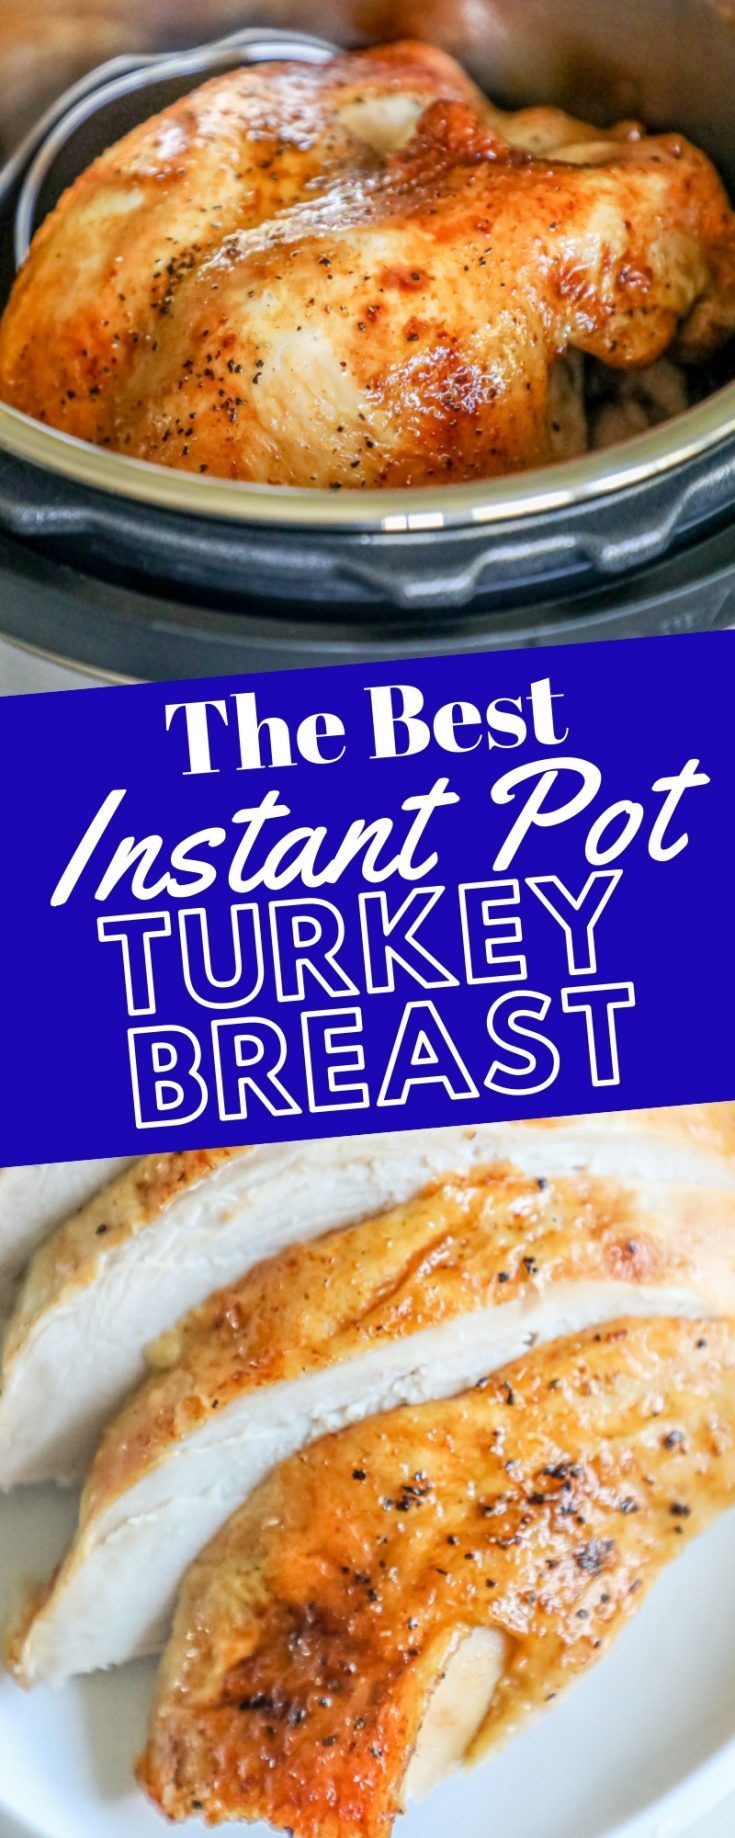 19 turkey breast recipes crock pot ideas